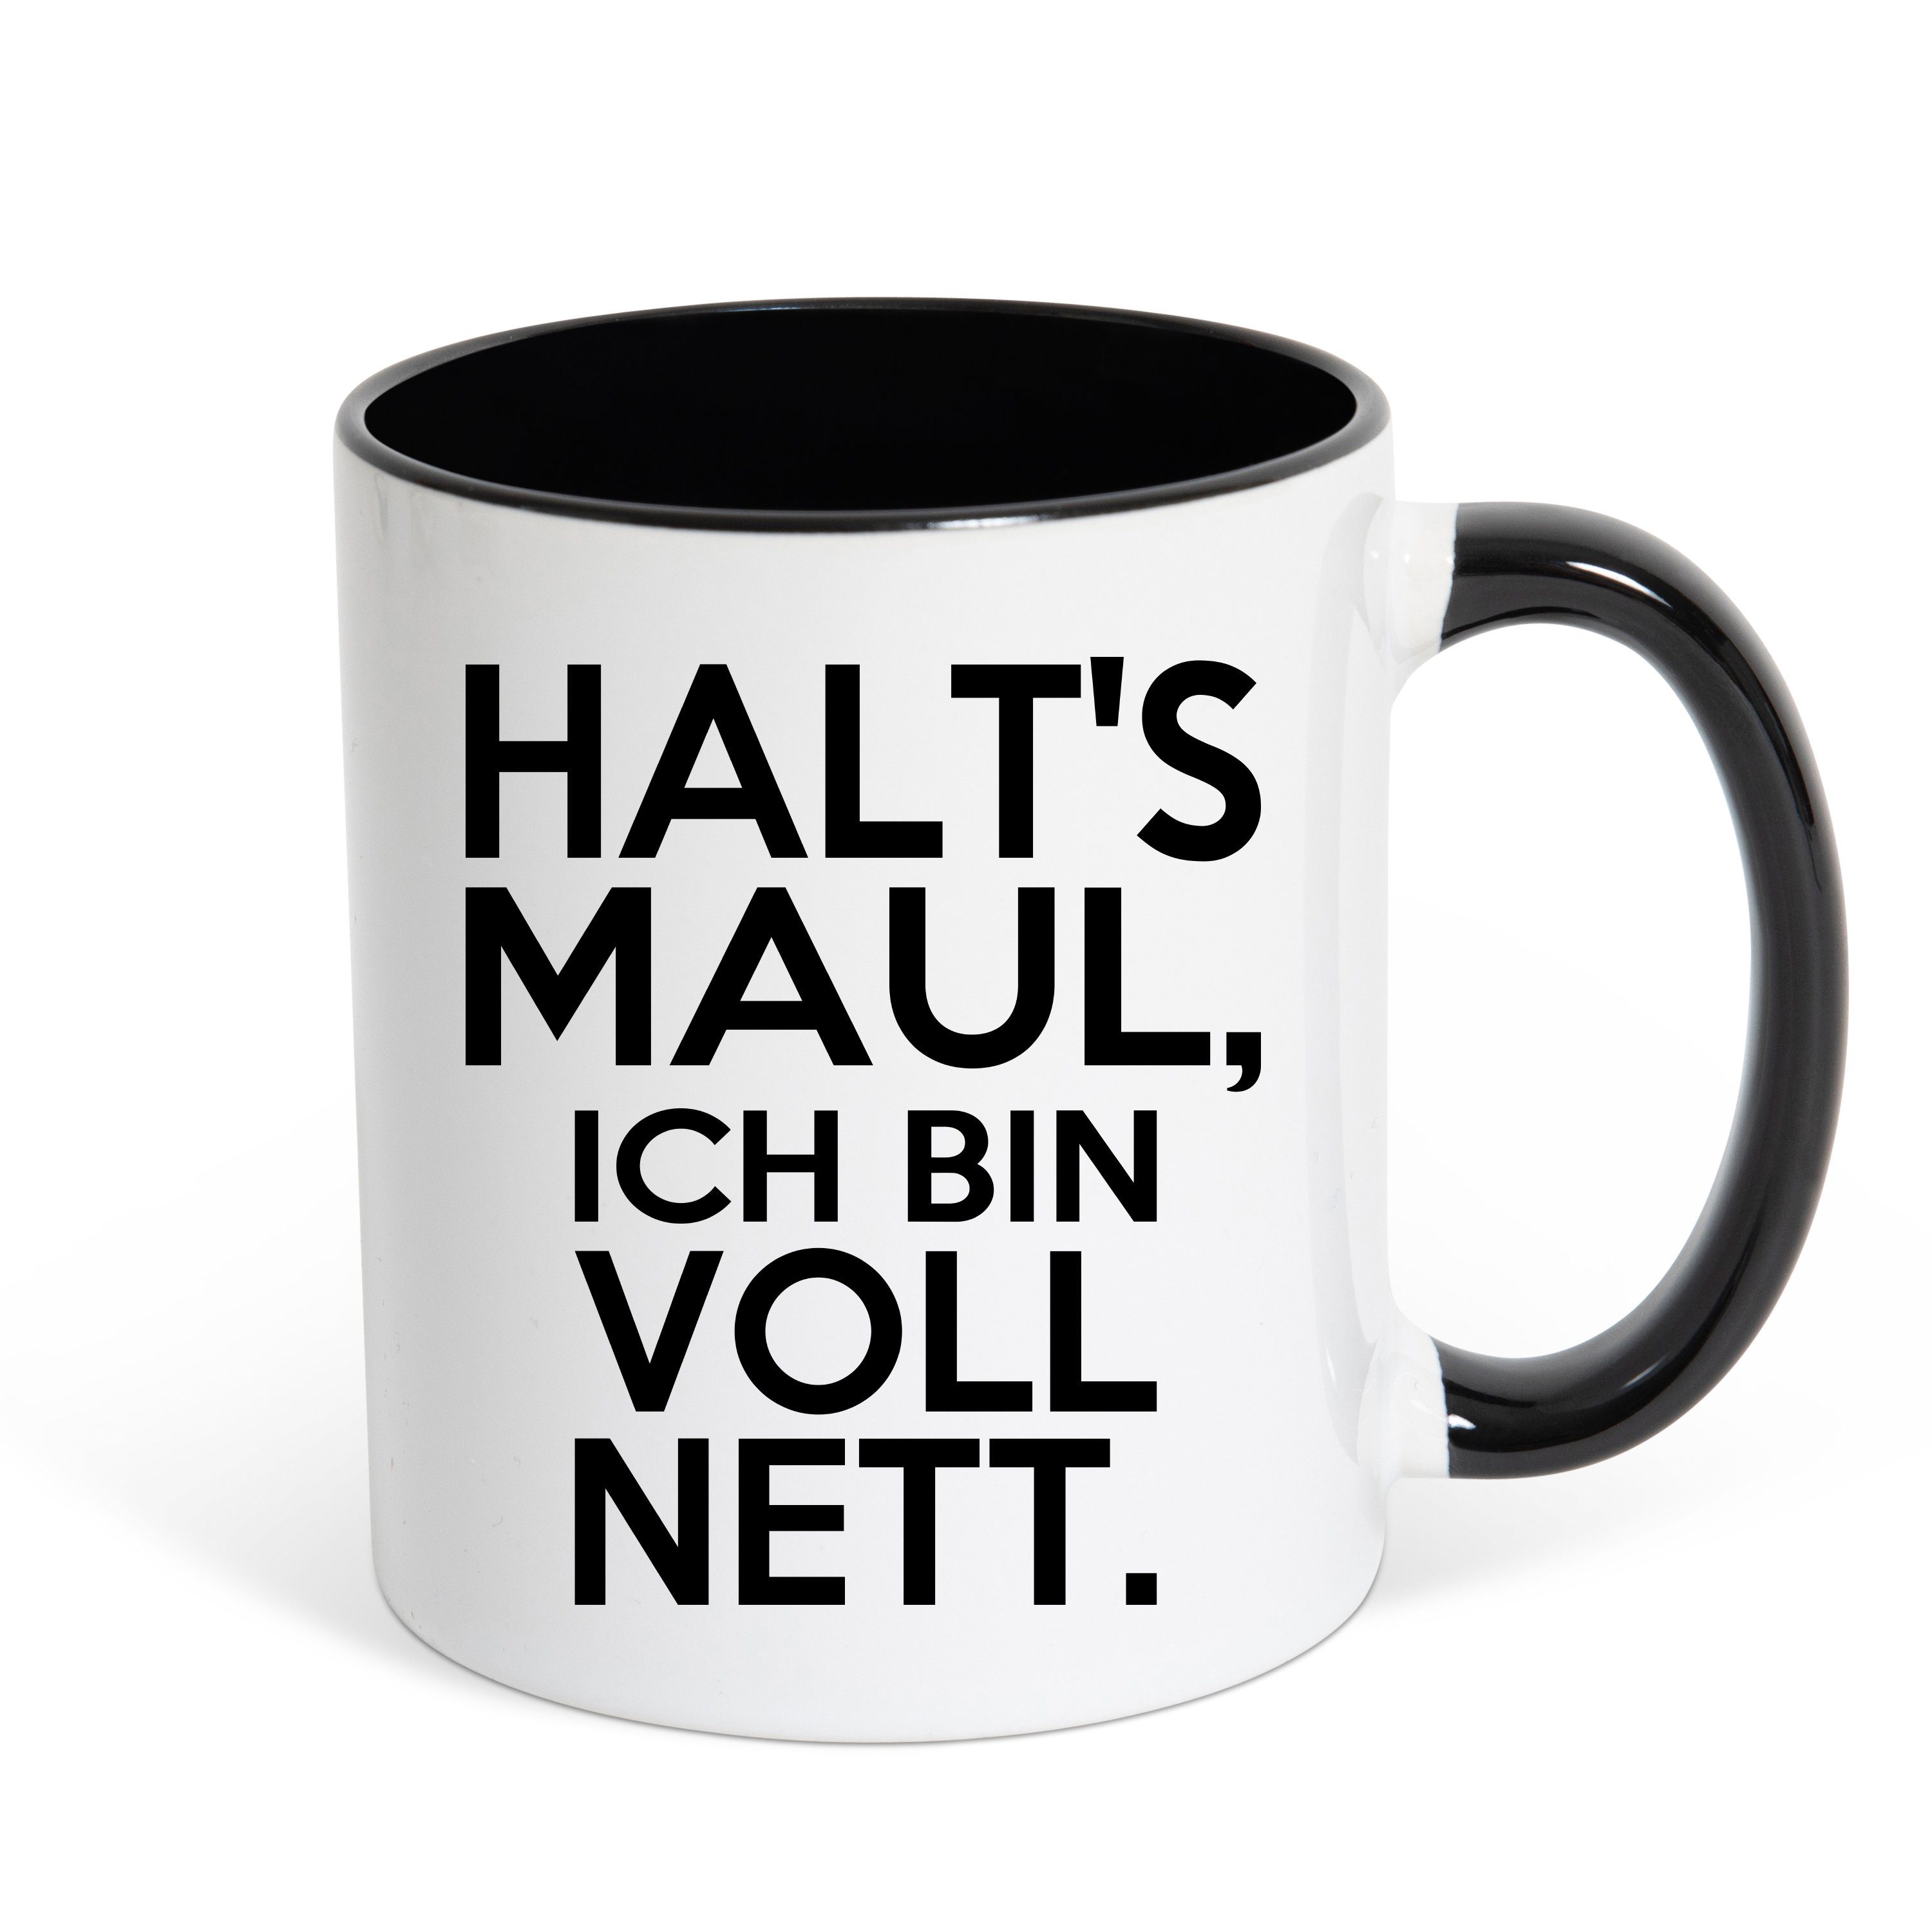 Youth Designz Tasse HALT'S MAUL, ICH BIN VOLL NETT Kaffeetasse Geschenk, Keramik, mit lustigem Spruch Weiss/Schwarz